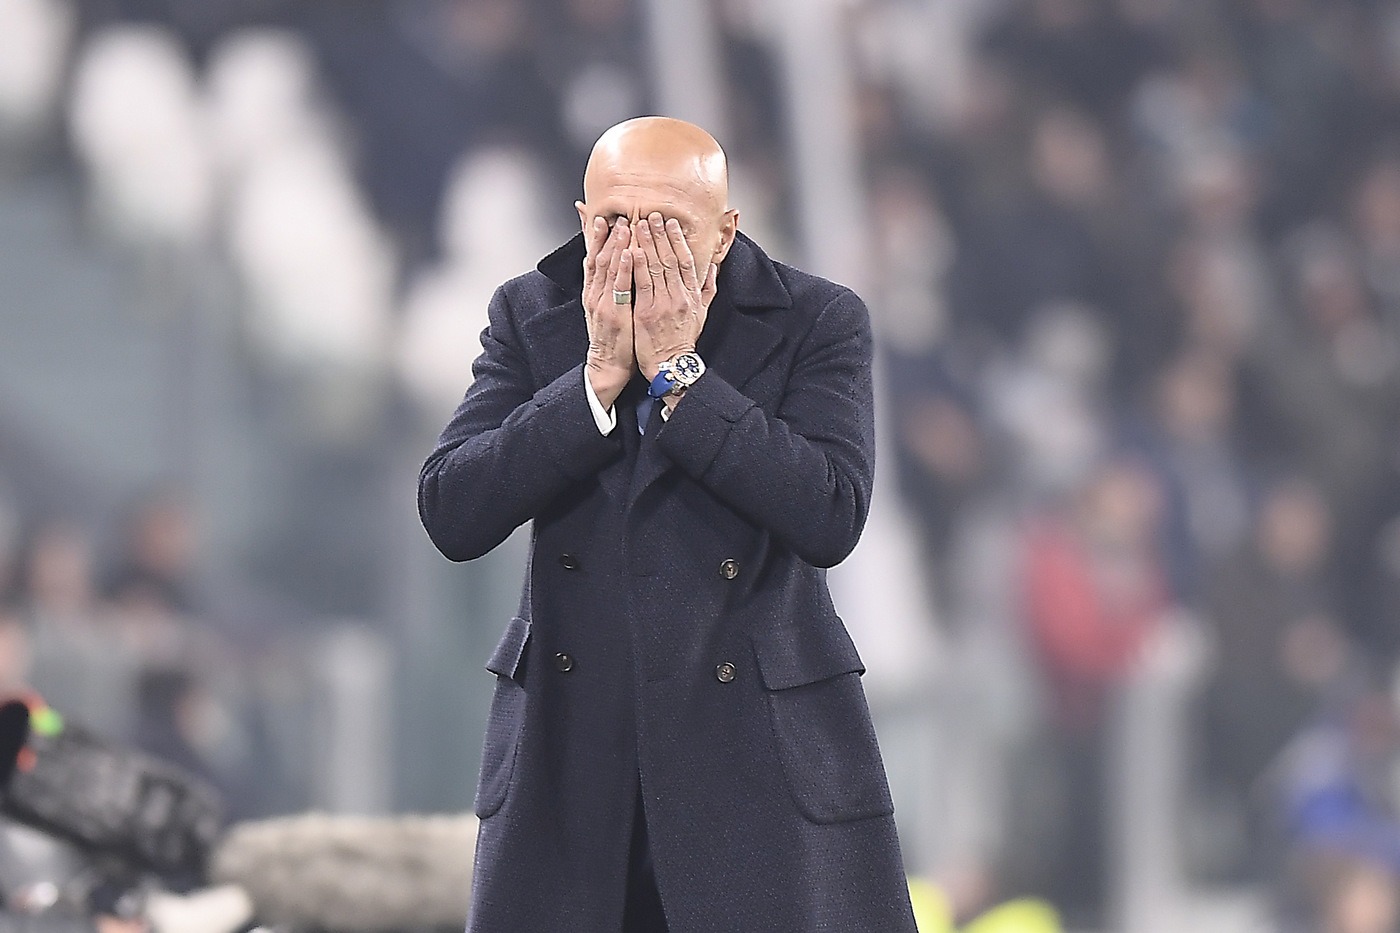 Inter-Udinese 15 dicembre: match della 16 esima giornata di Serie A. I nerazzurri reagiranno all'eliminazione dalla Champions?